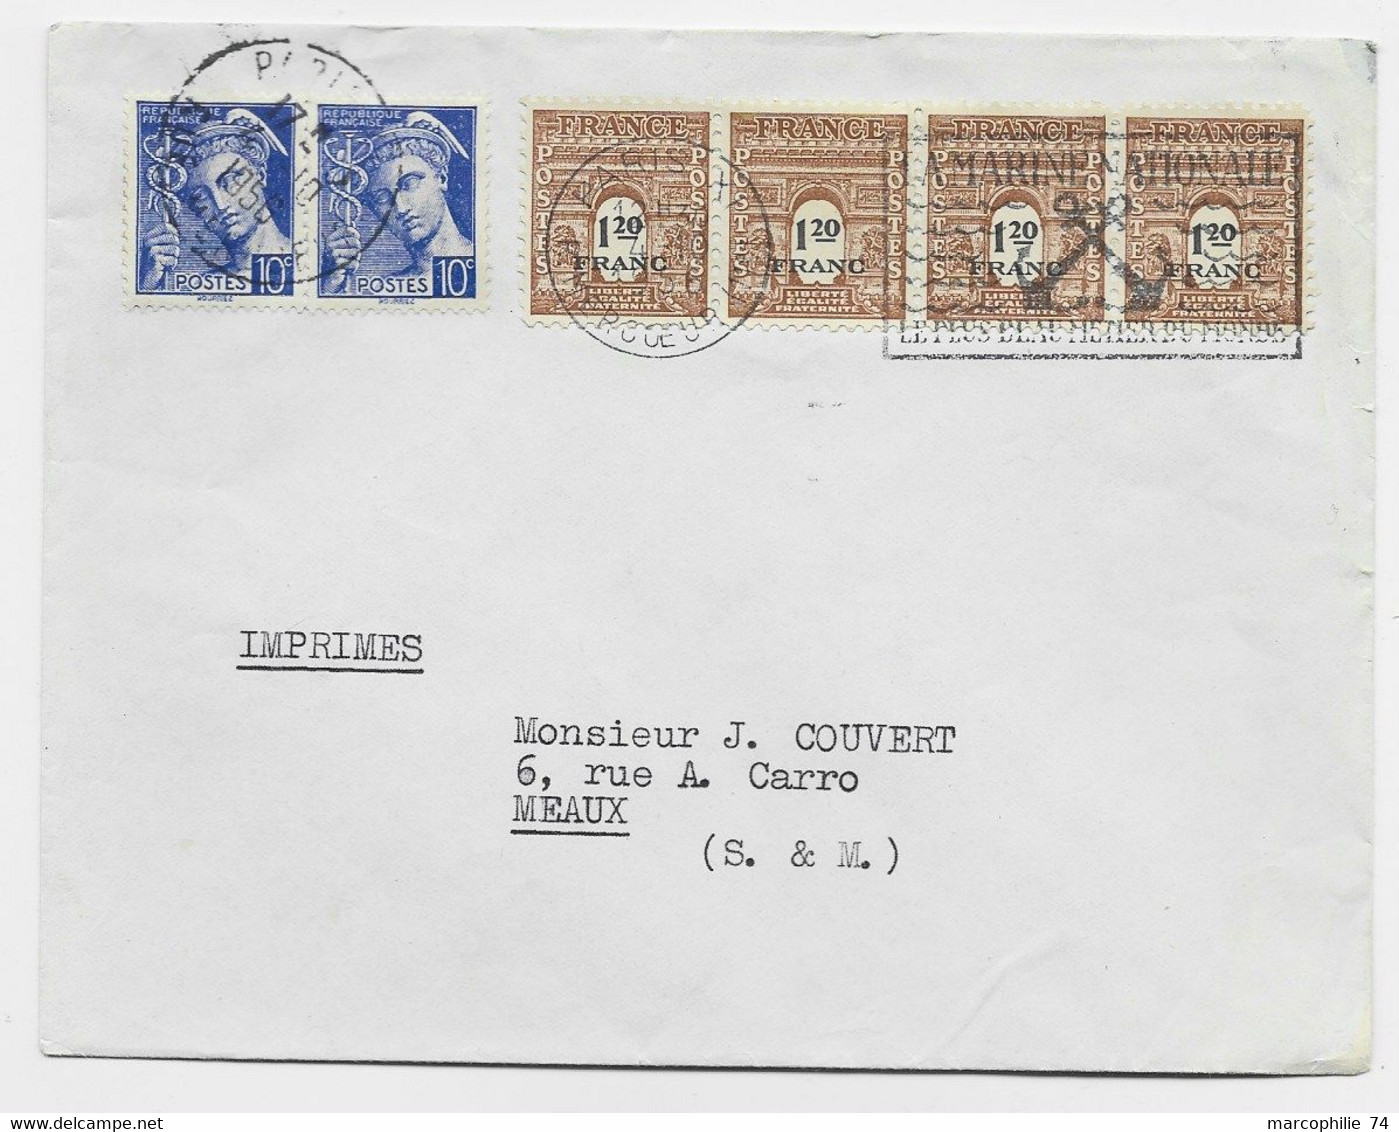 FRANCE ARC TRIOMPHE 1FR20 BANDE DE 4+ 10C MERCURE PAIRE LETTRE PARIS 1956 USAGE TARDIF AU TARIF - 1944-45 Arc Of Triomphe